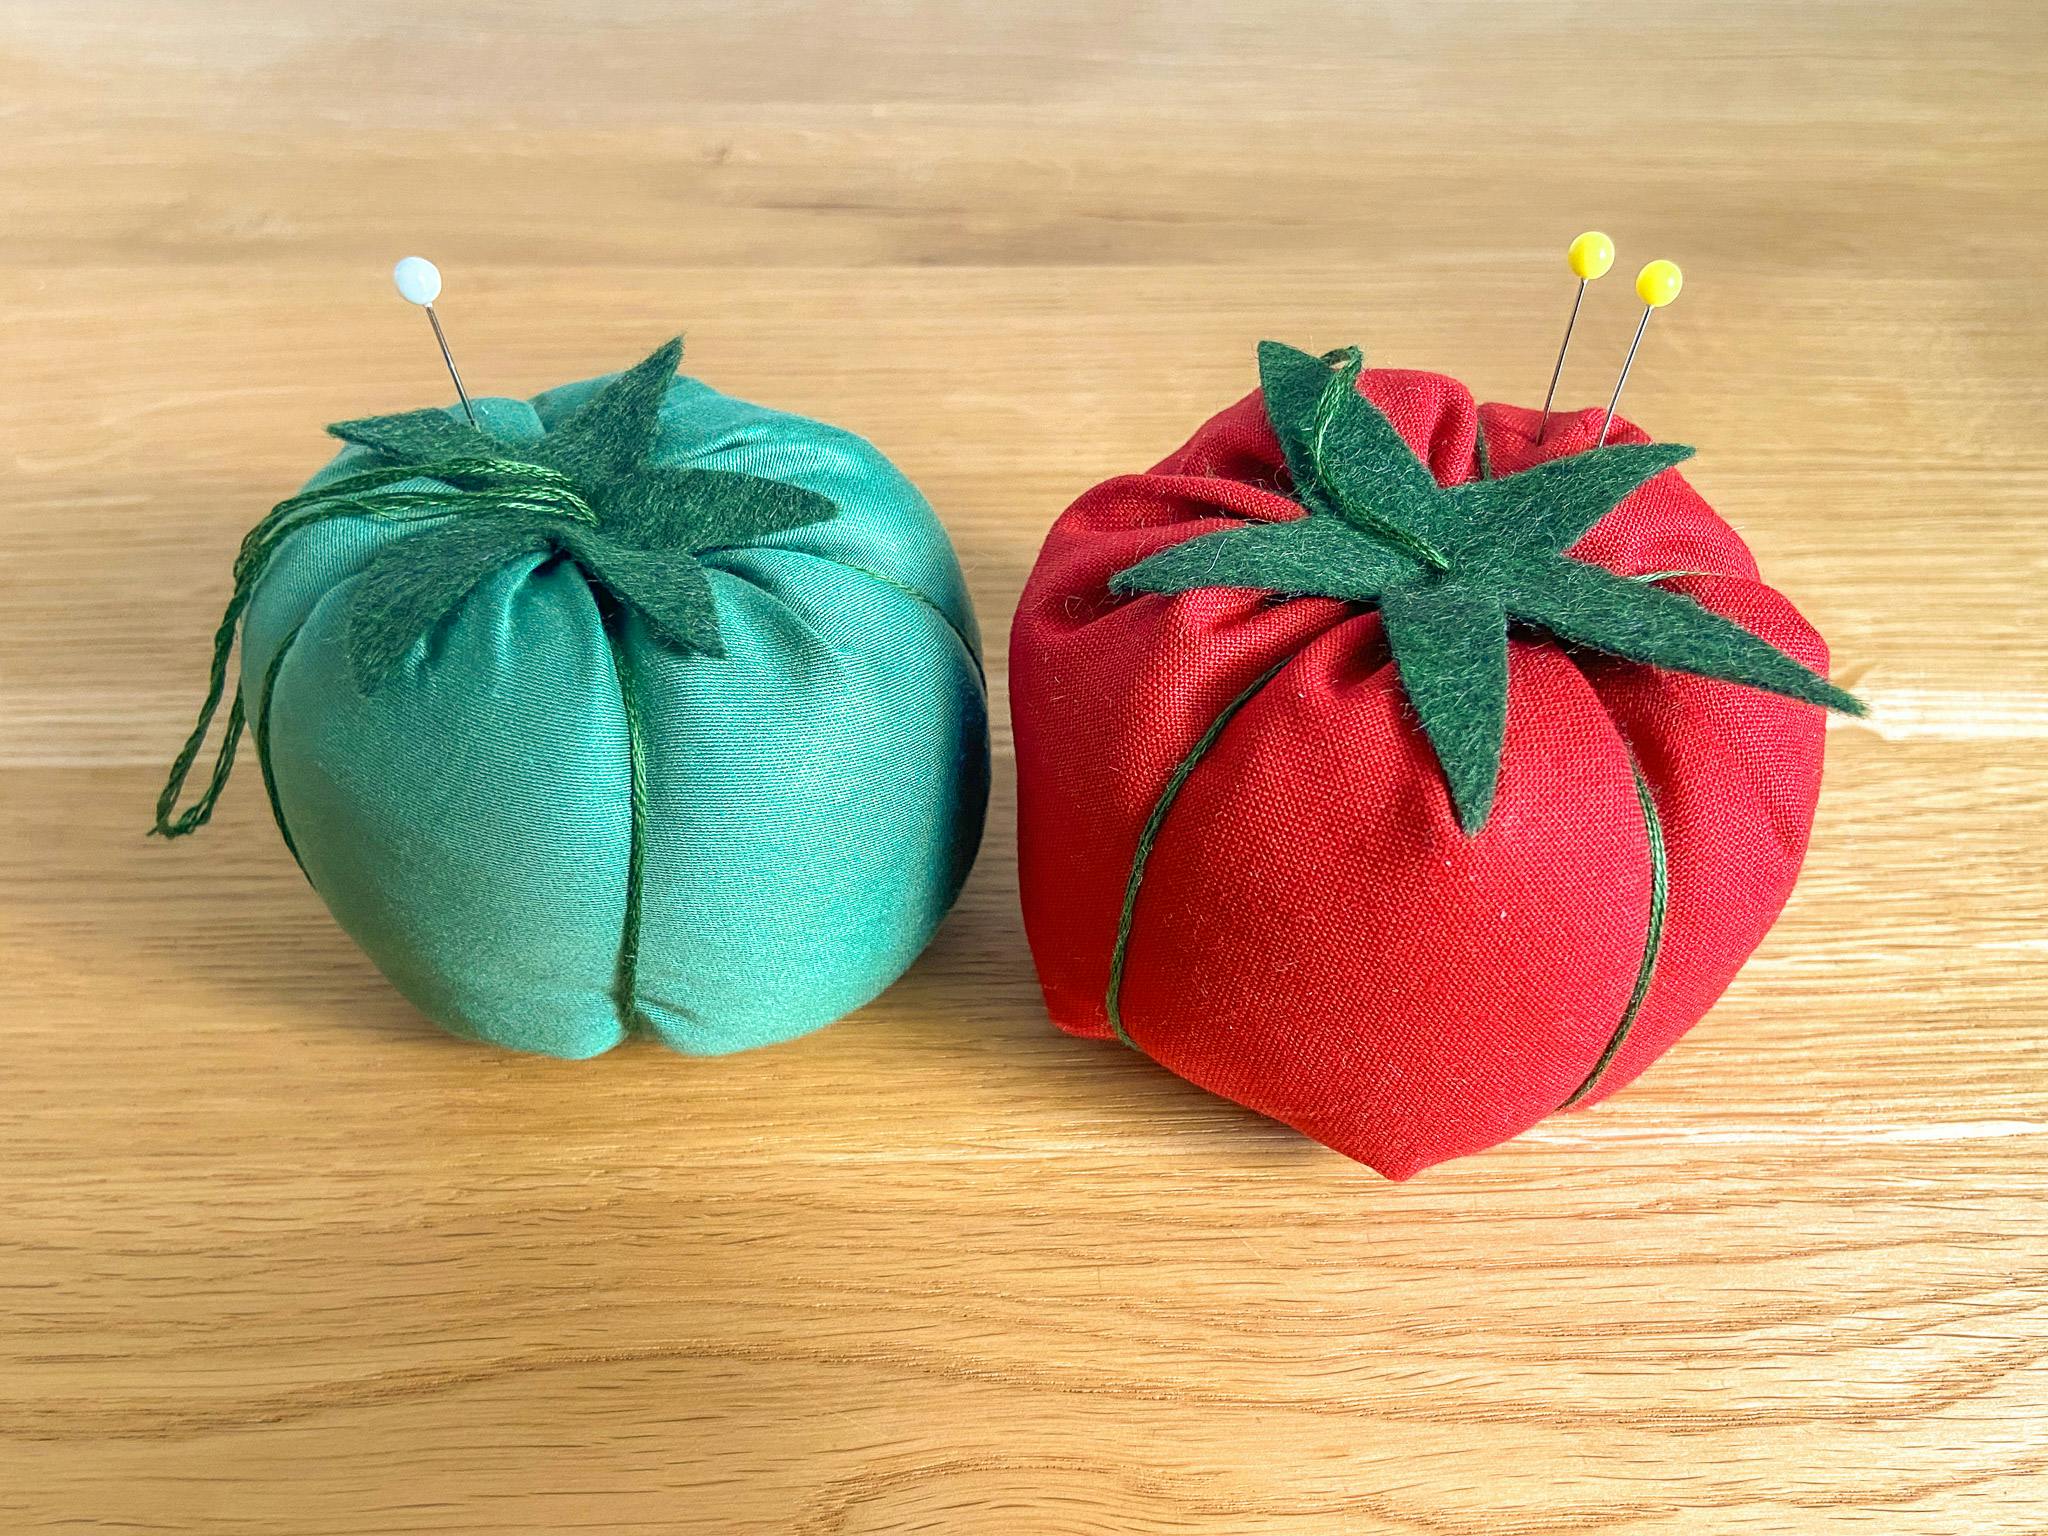 Puntaspilli fai da te a forma di pomodoro rosso e verde